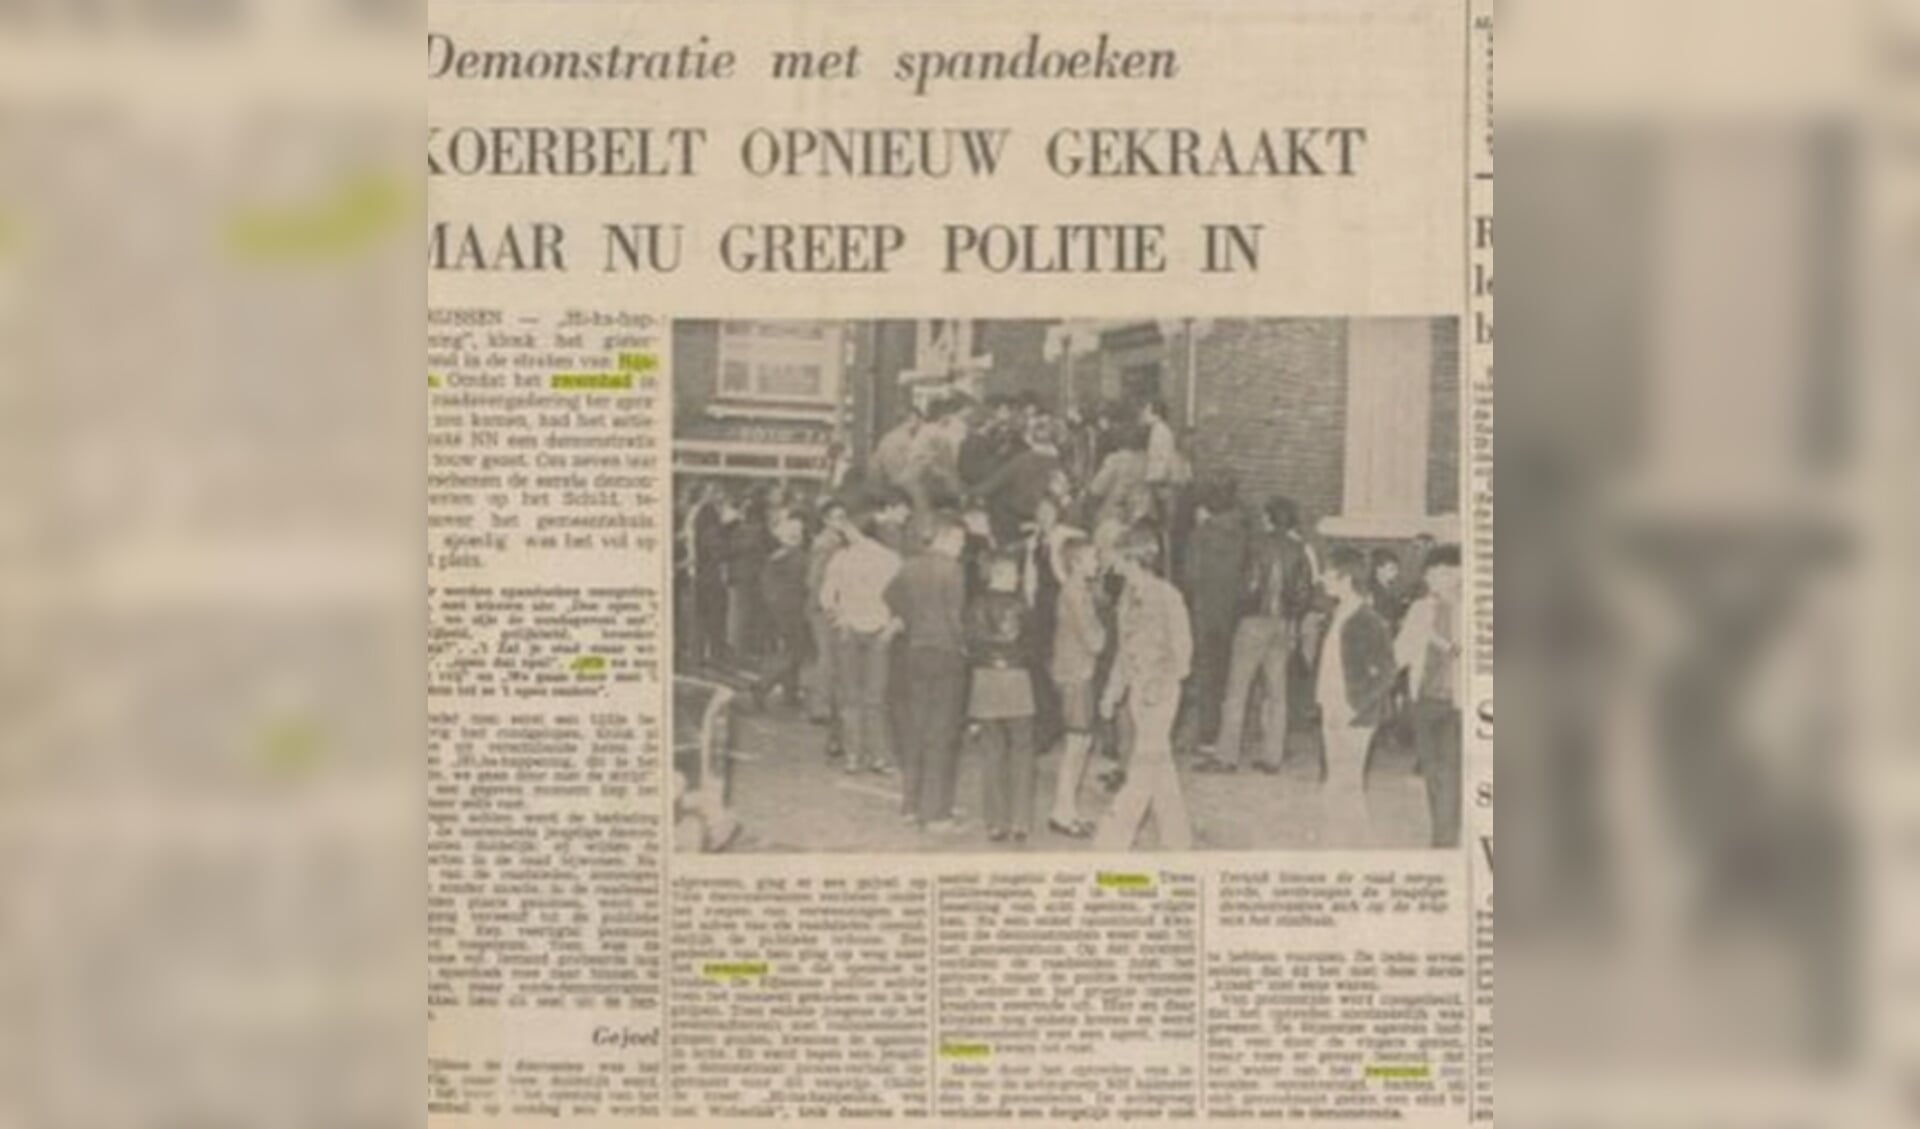 Niet alleen in Rijssen, maar ook in onder meer Genemuiden, 't Harde, Kockengen en Wezep werden eveneens acties gevoerd voor openstelling van zwembaden op zondagen en werden toegangspoorten geforceerd.